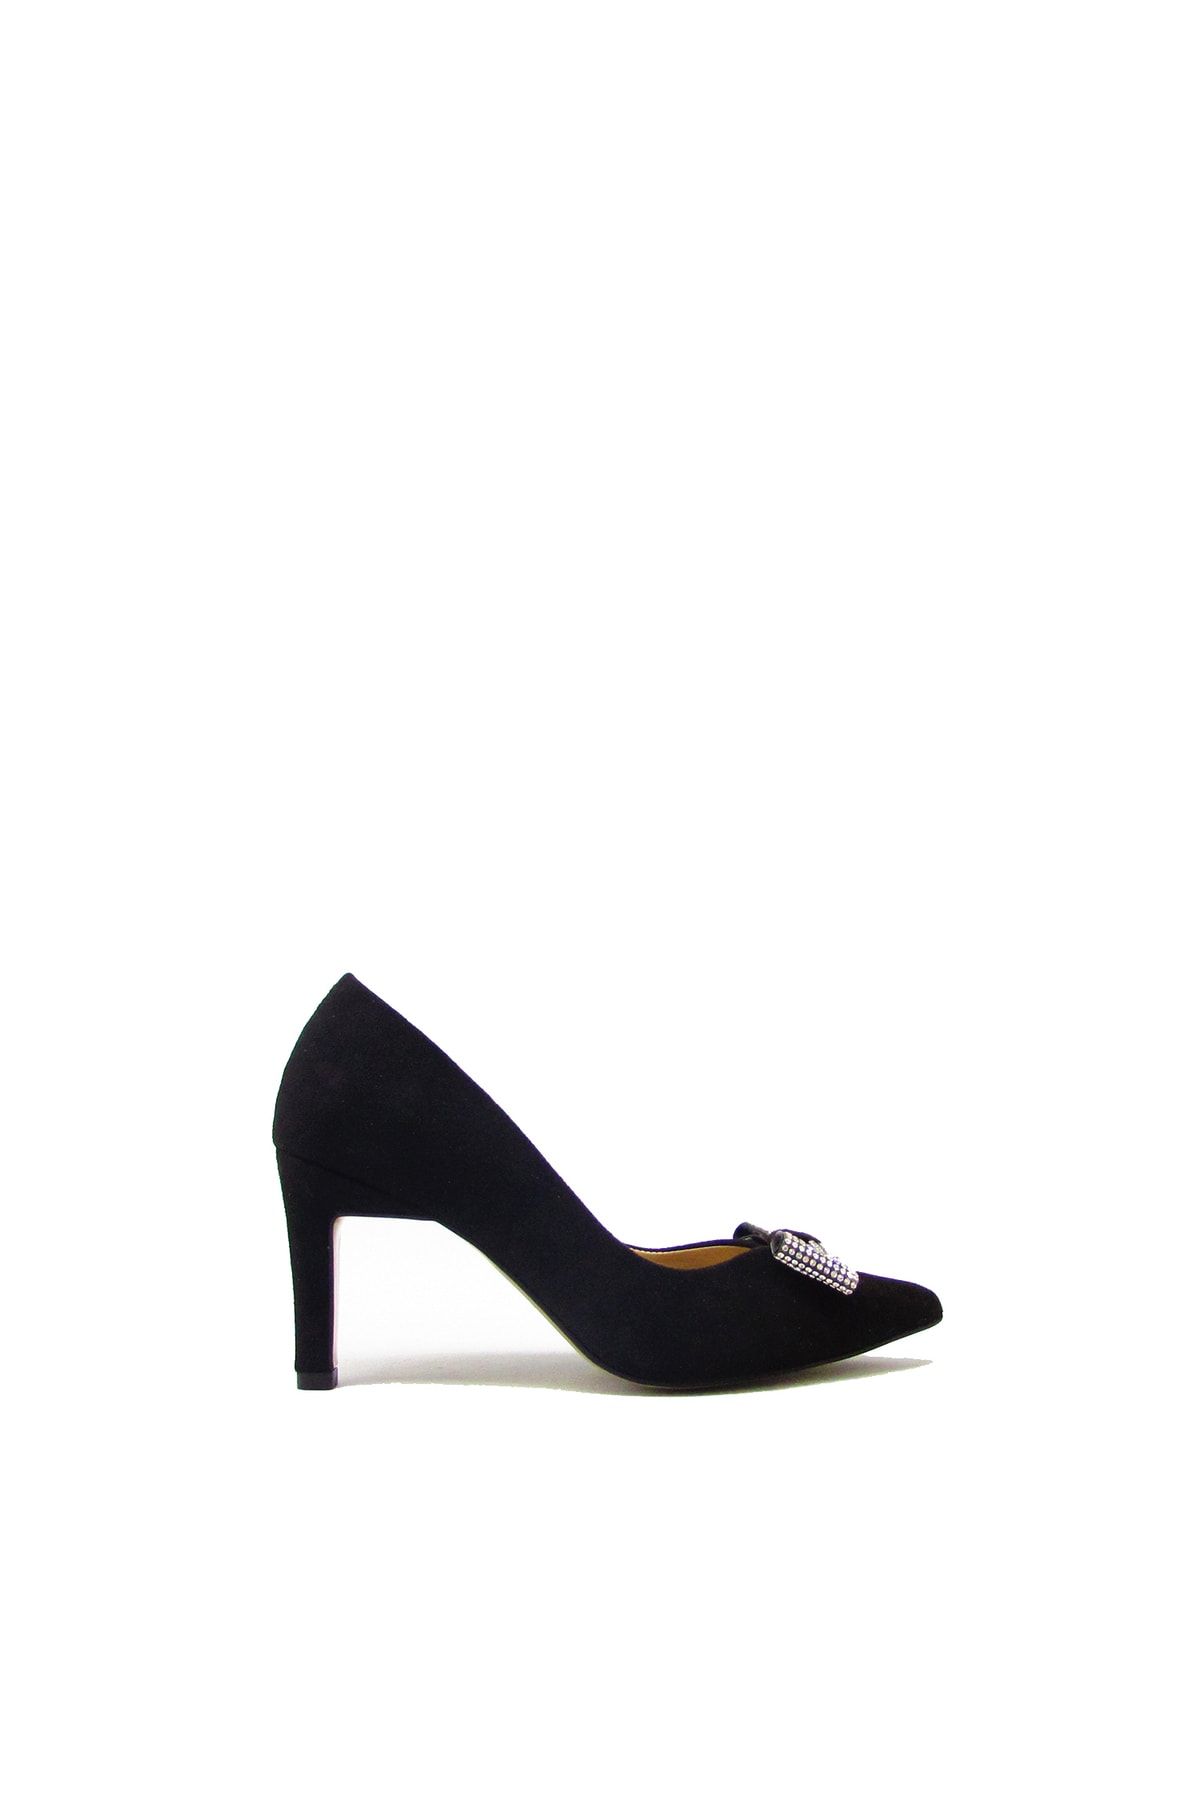 kanuga Rl102 Siyah Süet Kadın Fiyonklu Topuklu Ayakkabı